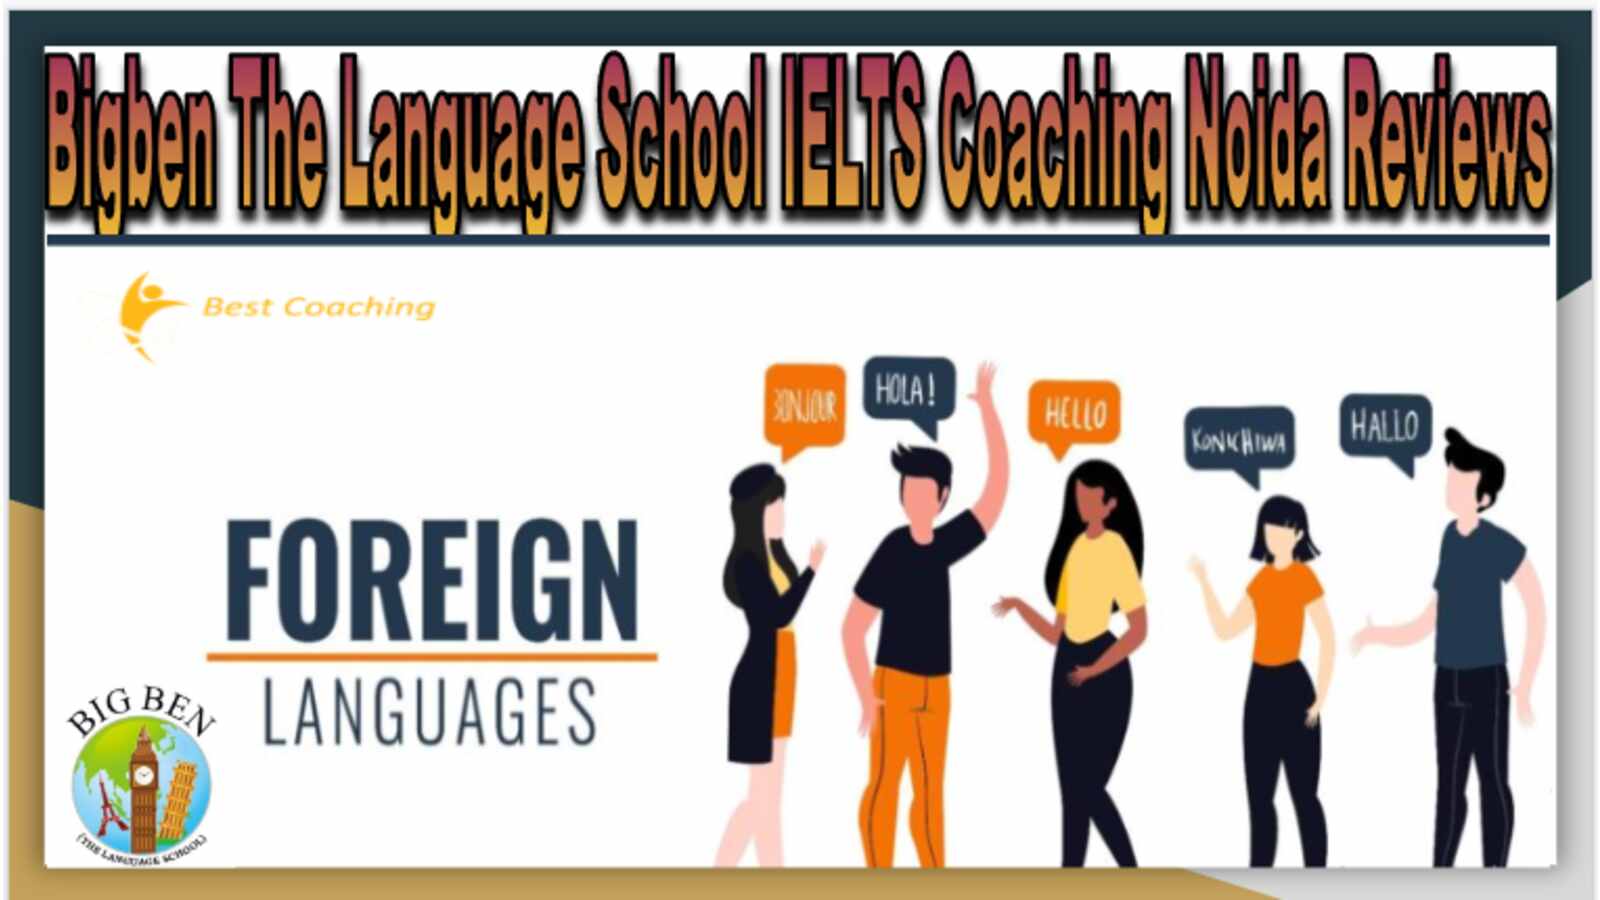 Bigben The Language School IELTS Coaching Noida Reviews